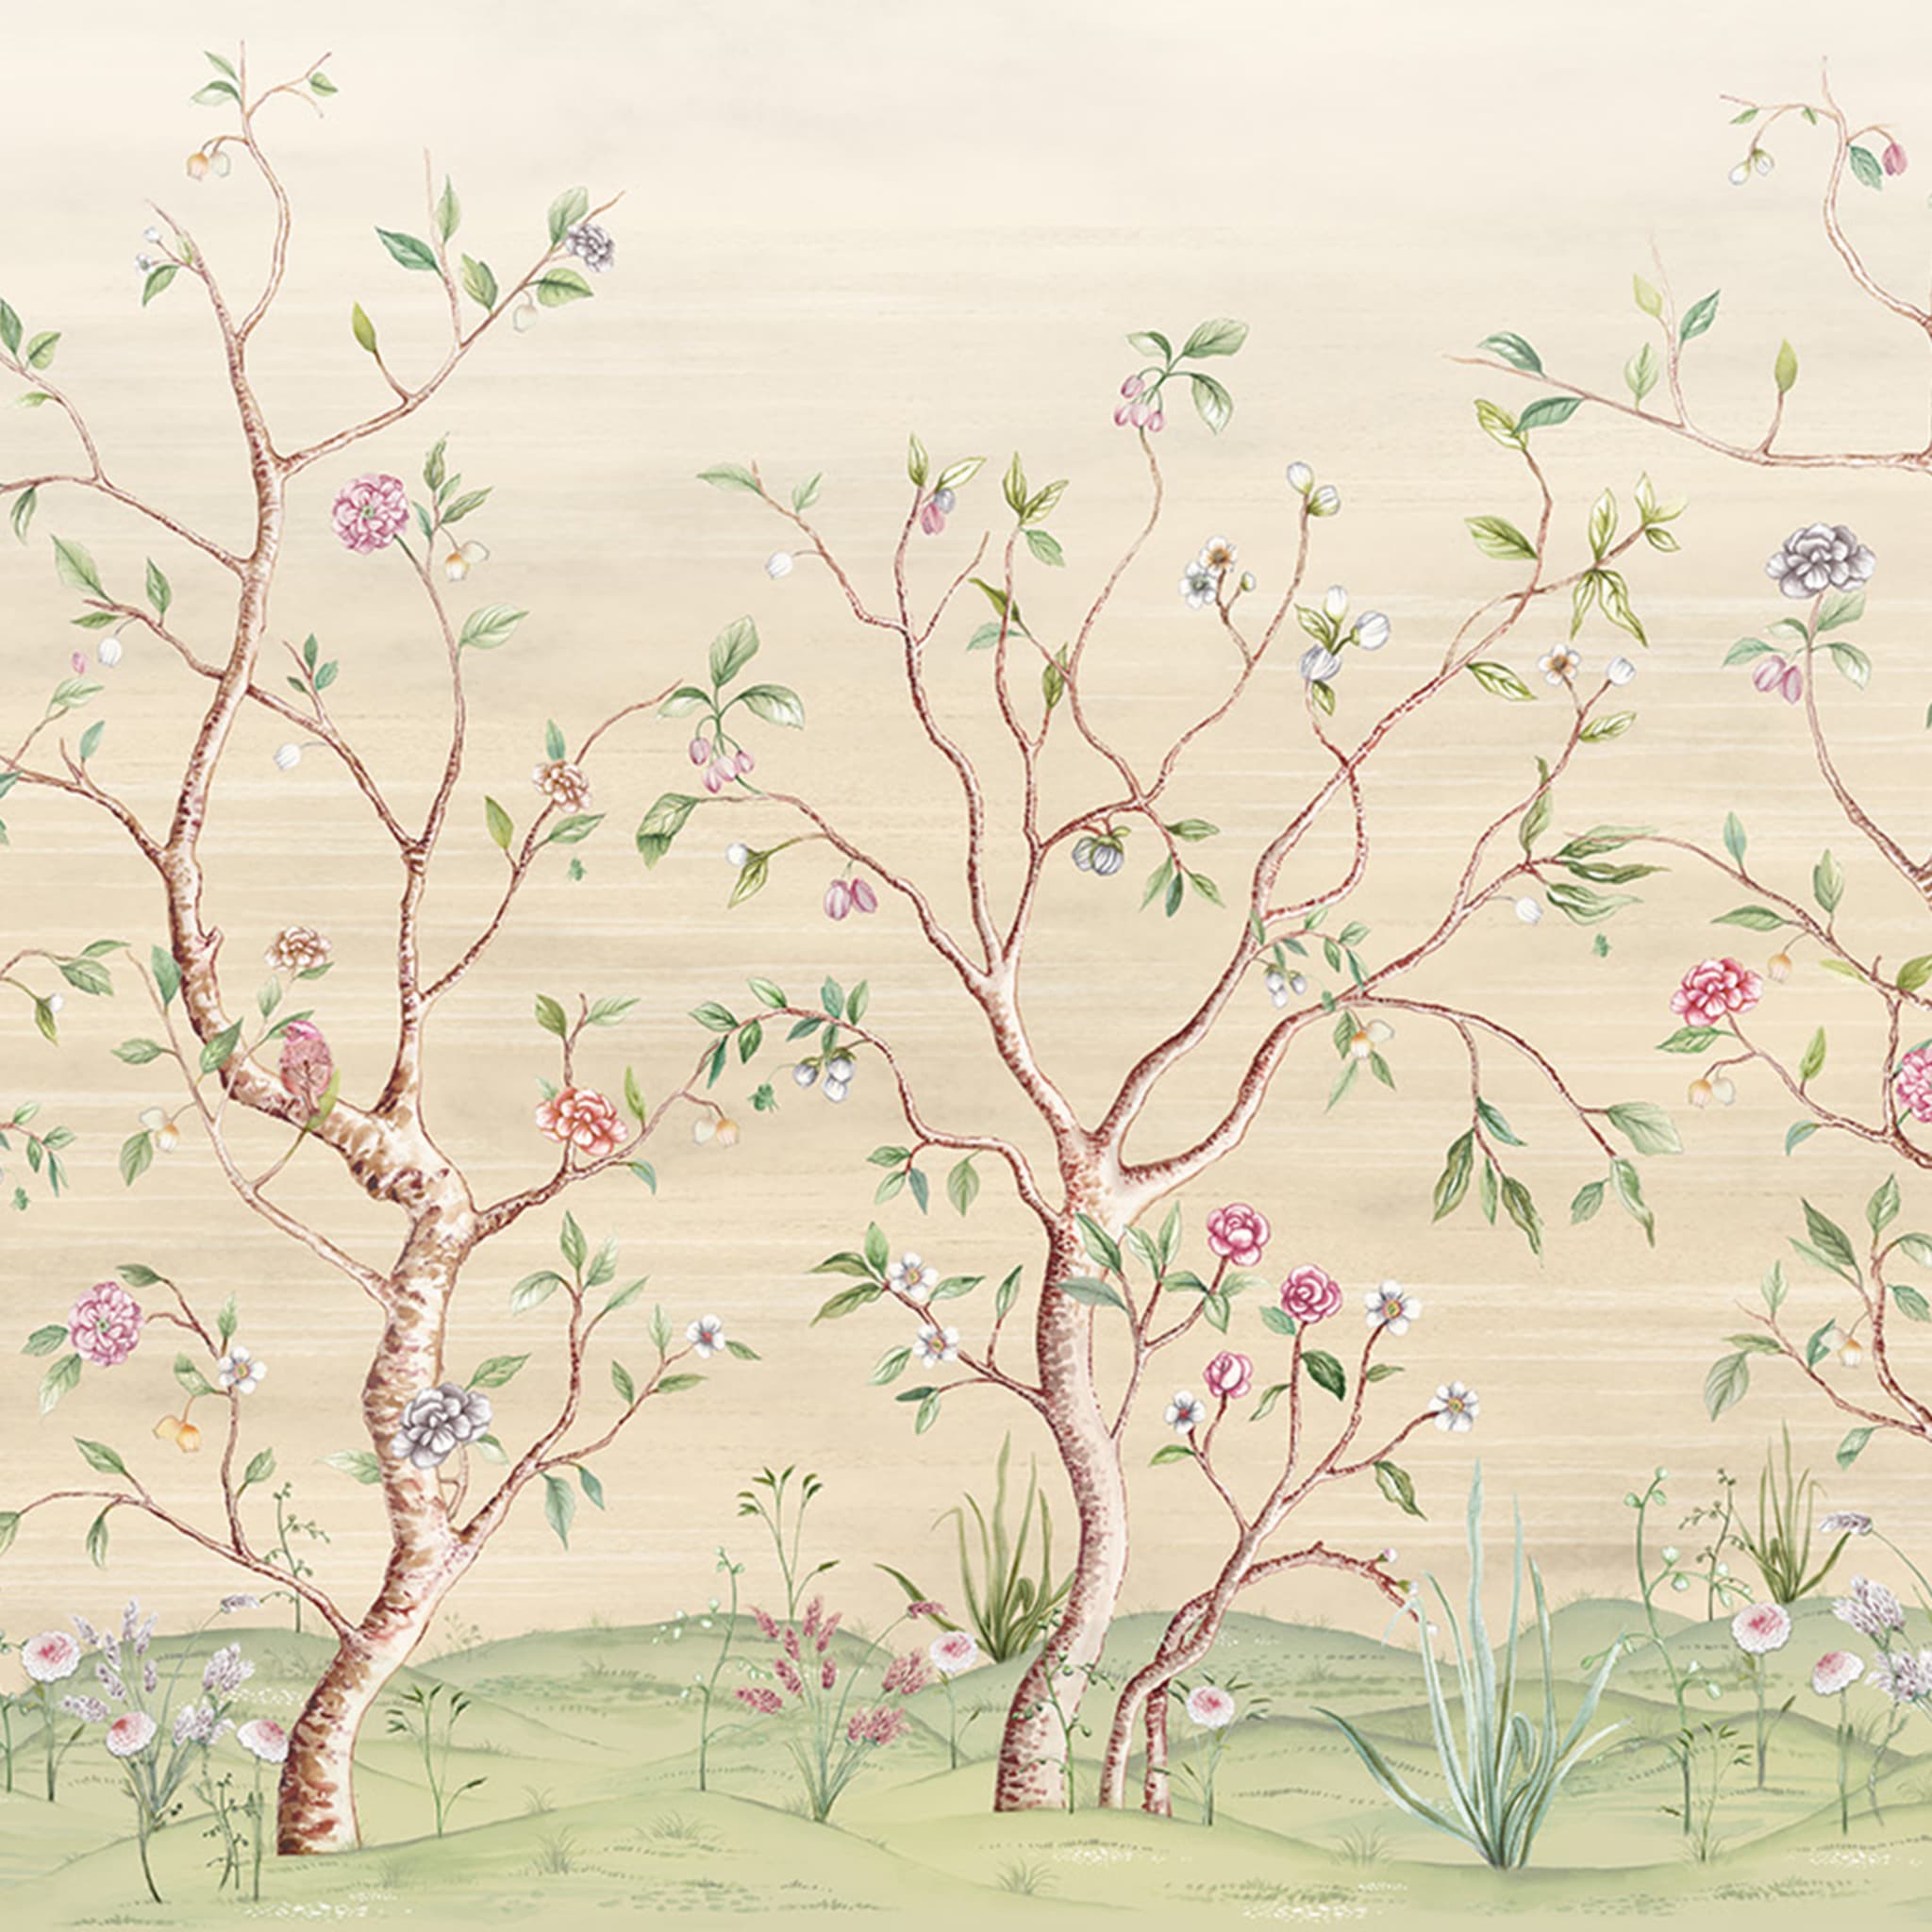 Chinoiserie 1 Wallpaper by Raffaella Gallazzi  - Alternative view 1